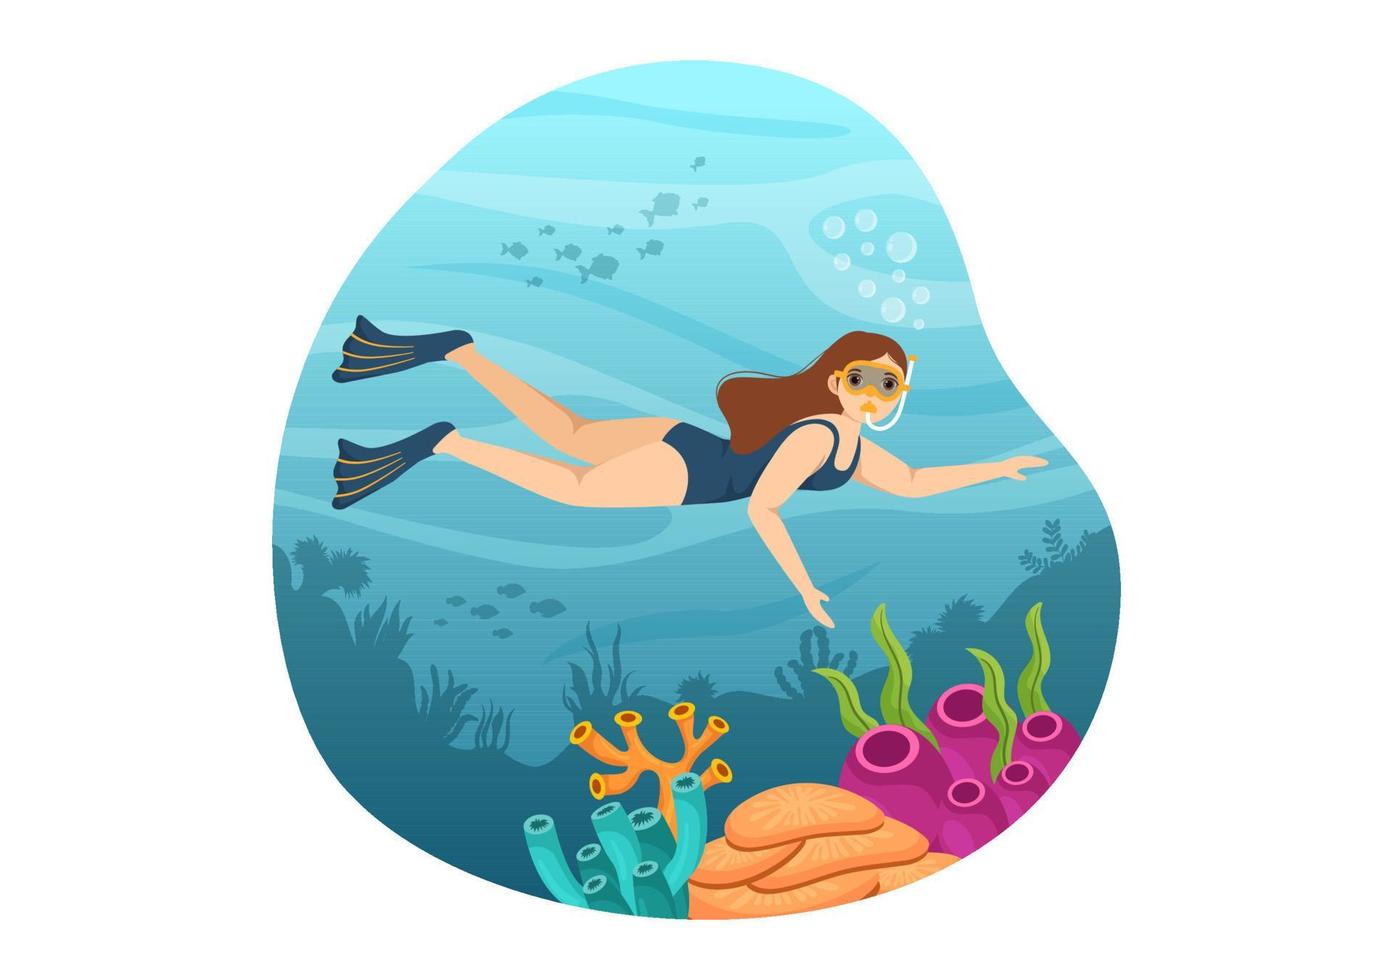 ilustração de mergulho com natação subaquática explorando o mar, recifes de corais ou peixes no oceano para a página inicial em modelos desenhados à mão de desenho animado vetor